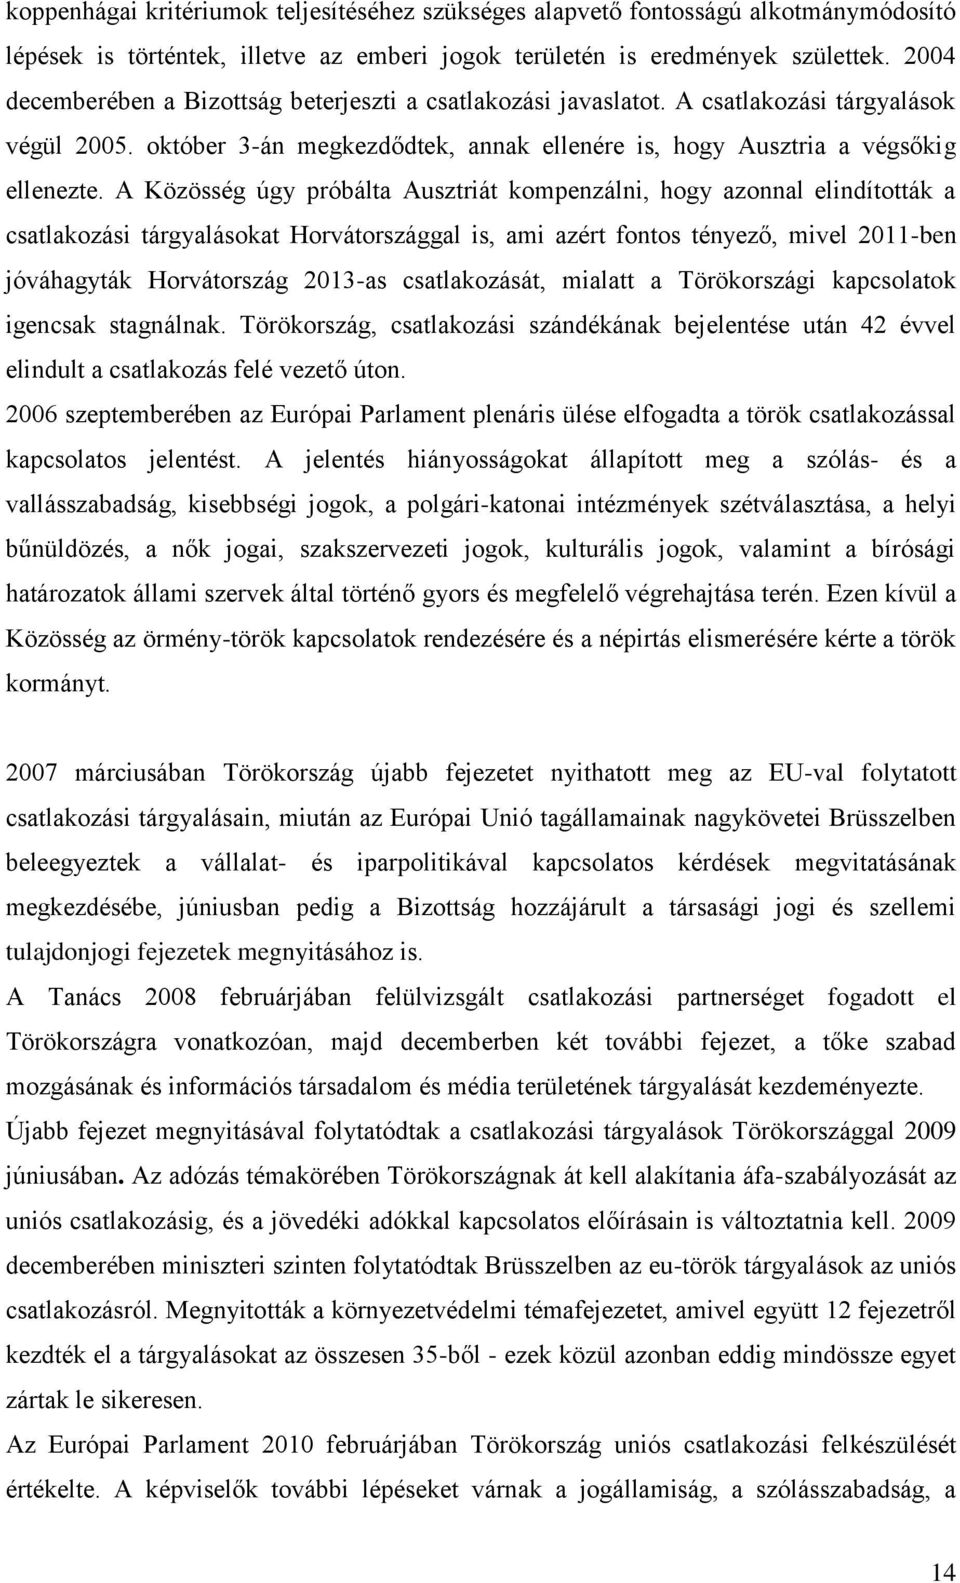 A Közösség úgy próbálta Ausztriát kompenzálni, hogy azonnal elindították a csatlakozási tárgyalásokat Horvátországgal is, ami azért fontos tényező, mivel 2011-ben jóváhagyták Horvátország 2013-as